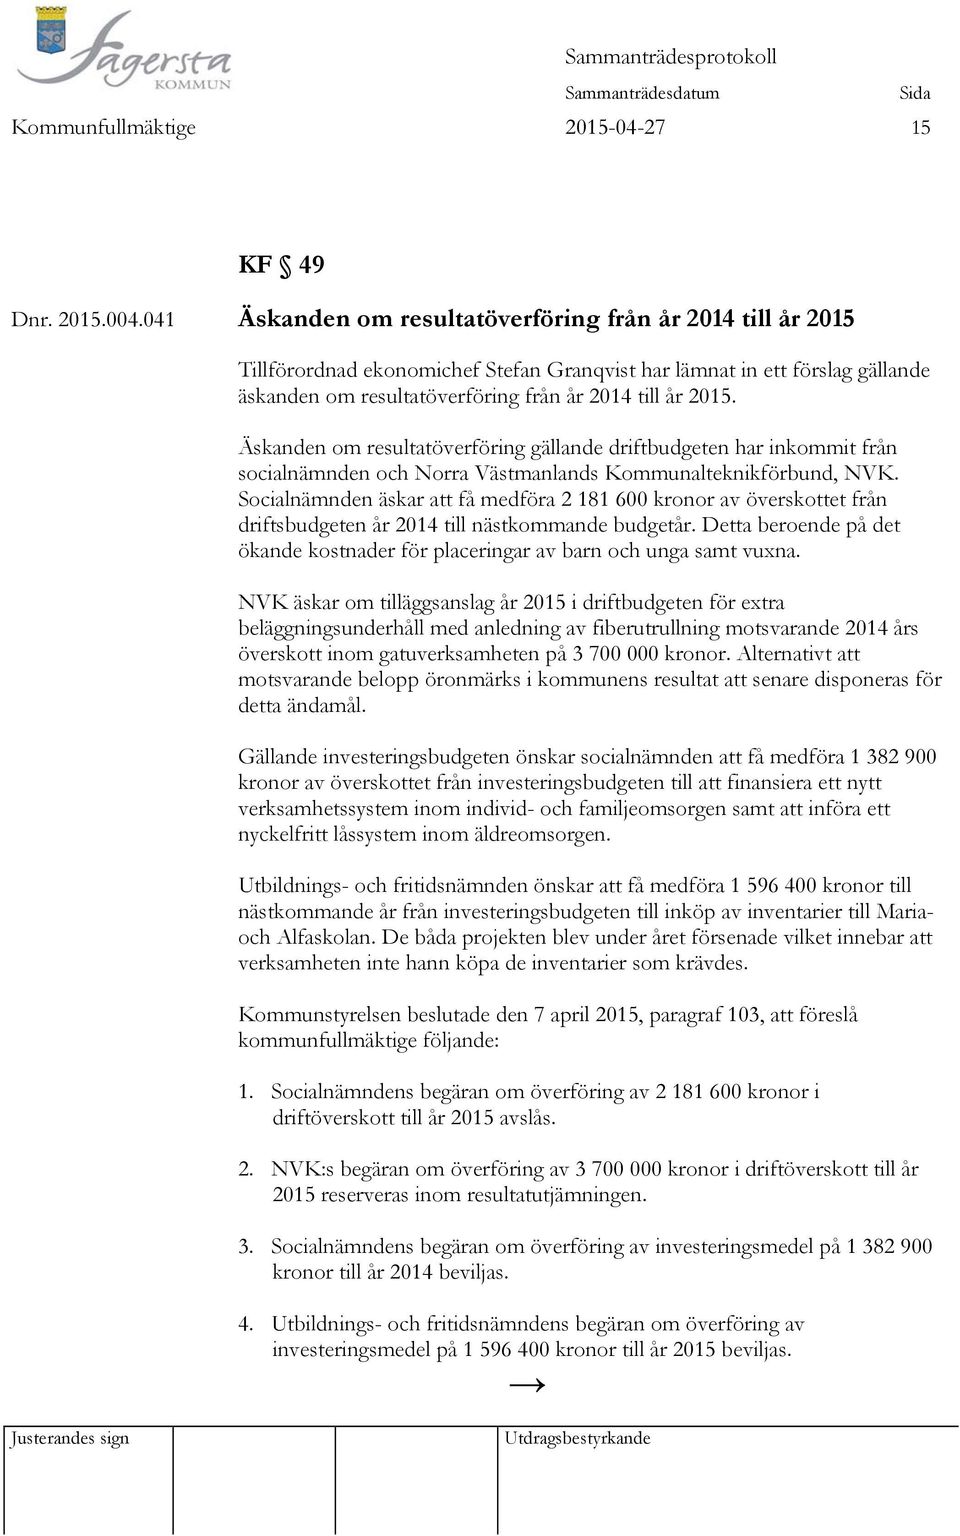 Äskanden om resultatöverföring gällande driftbudgeten har inkommit från socialnämnden och Norra Västmanlands Kommunalteknikförbund, NVK.